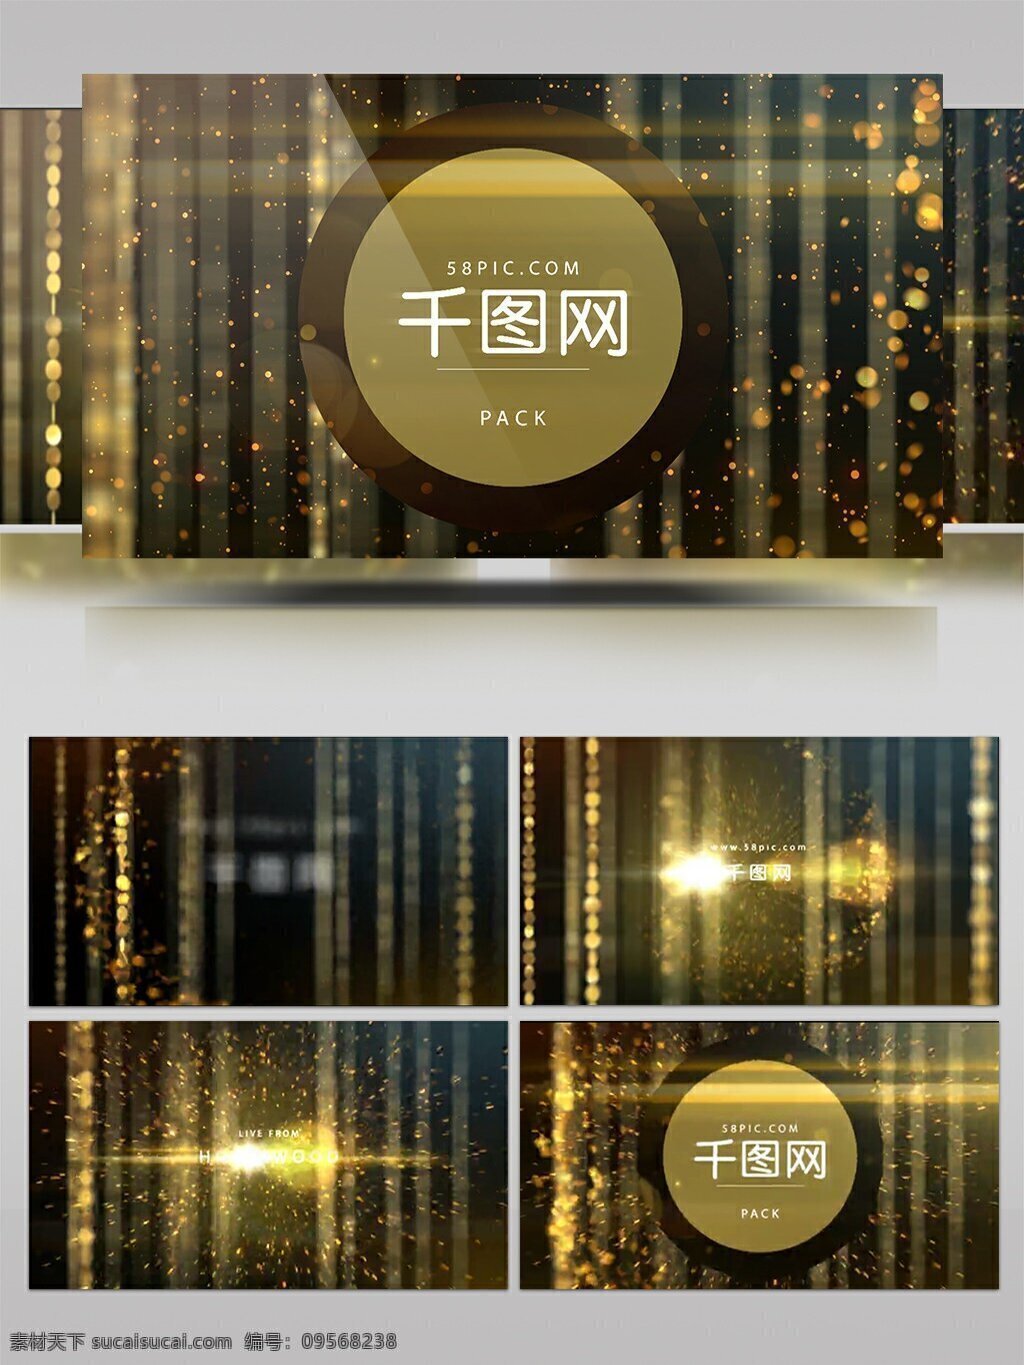 ae 模板 高端 华丽 金色 粒子 颁奖典礼 栏目 包装 ae模板 栏目包装 金色粒子